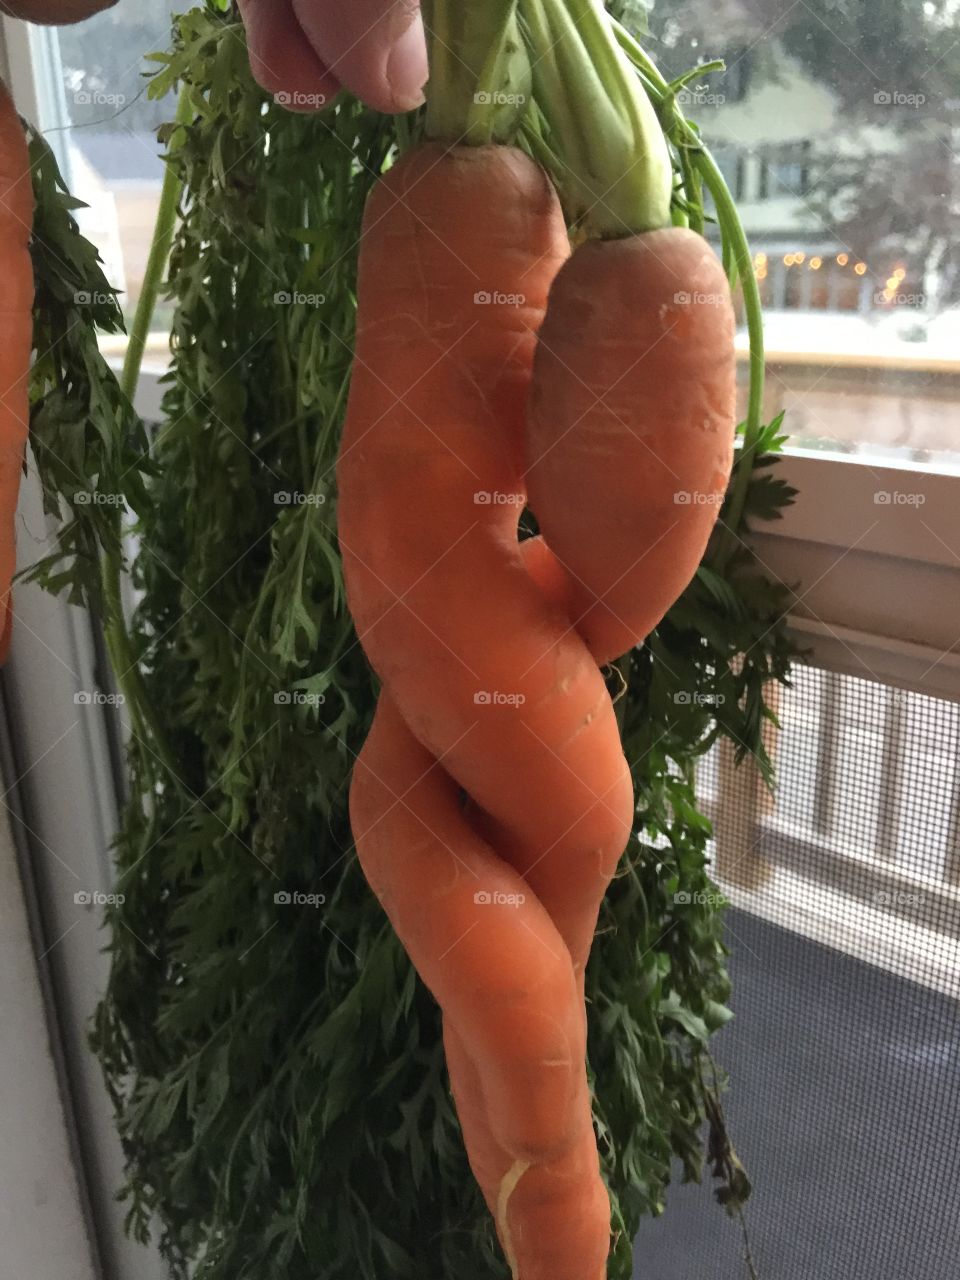 Carrot love!